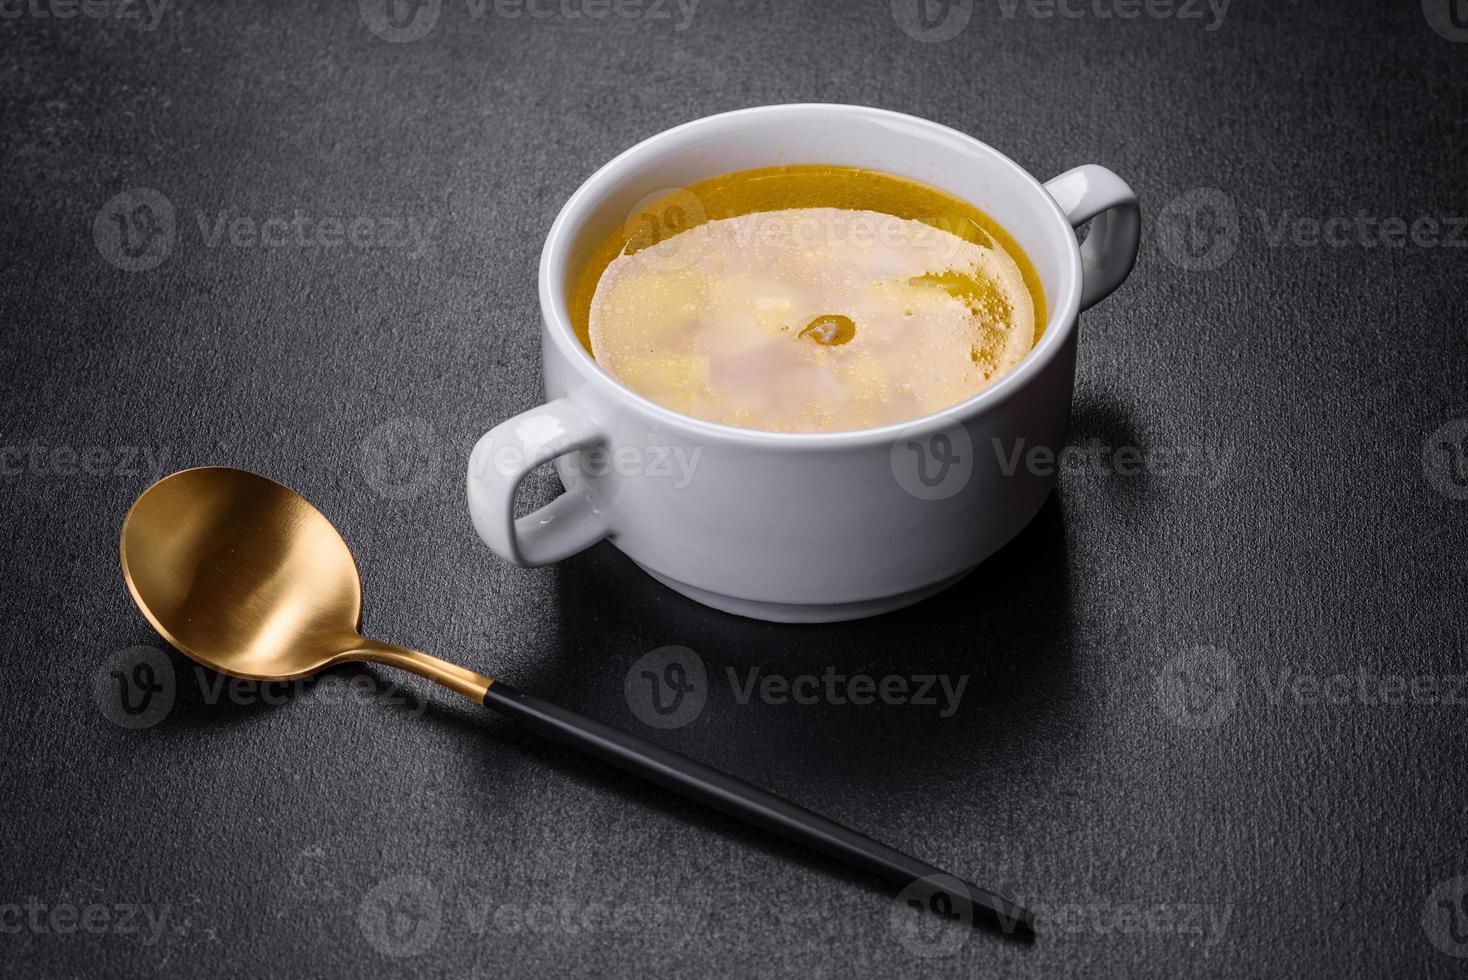 zuppa di piselli freschi in una ciotola su sfondo nero. cucinare a casa foto